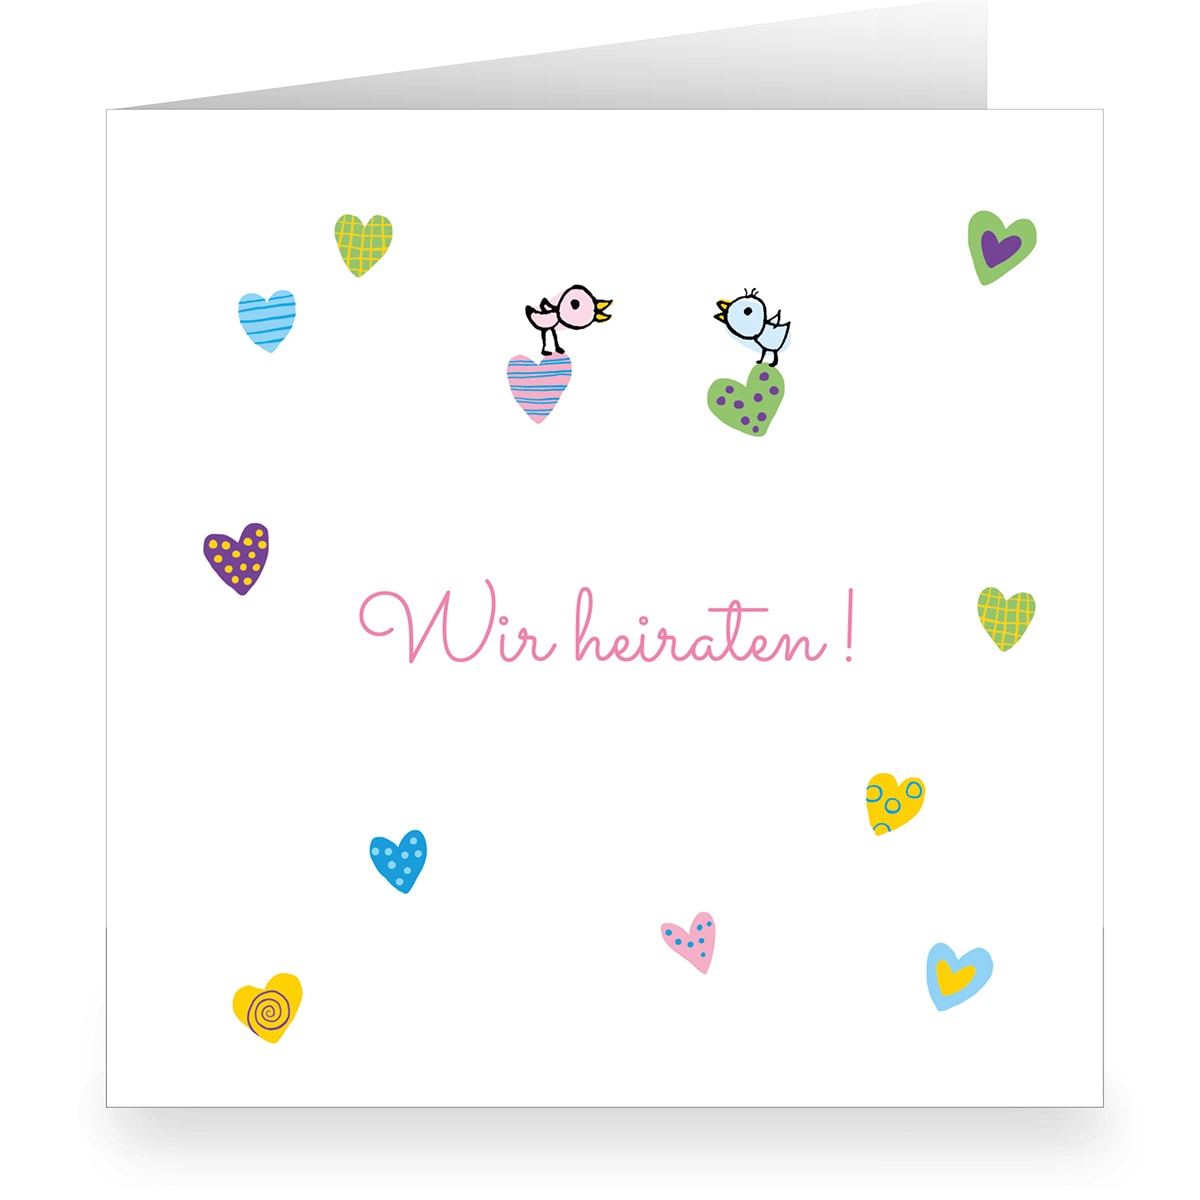 Kartenkaufrausch: Liebevolle große Hochzeits Anzeigenkarte aus unserer Anzeige Papeterie in weiß